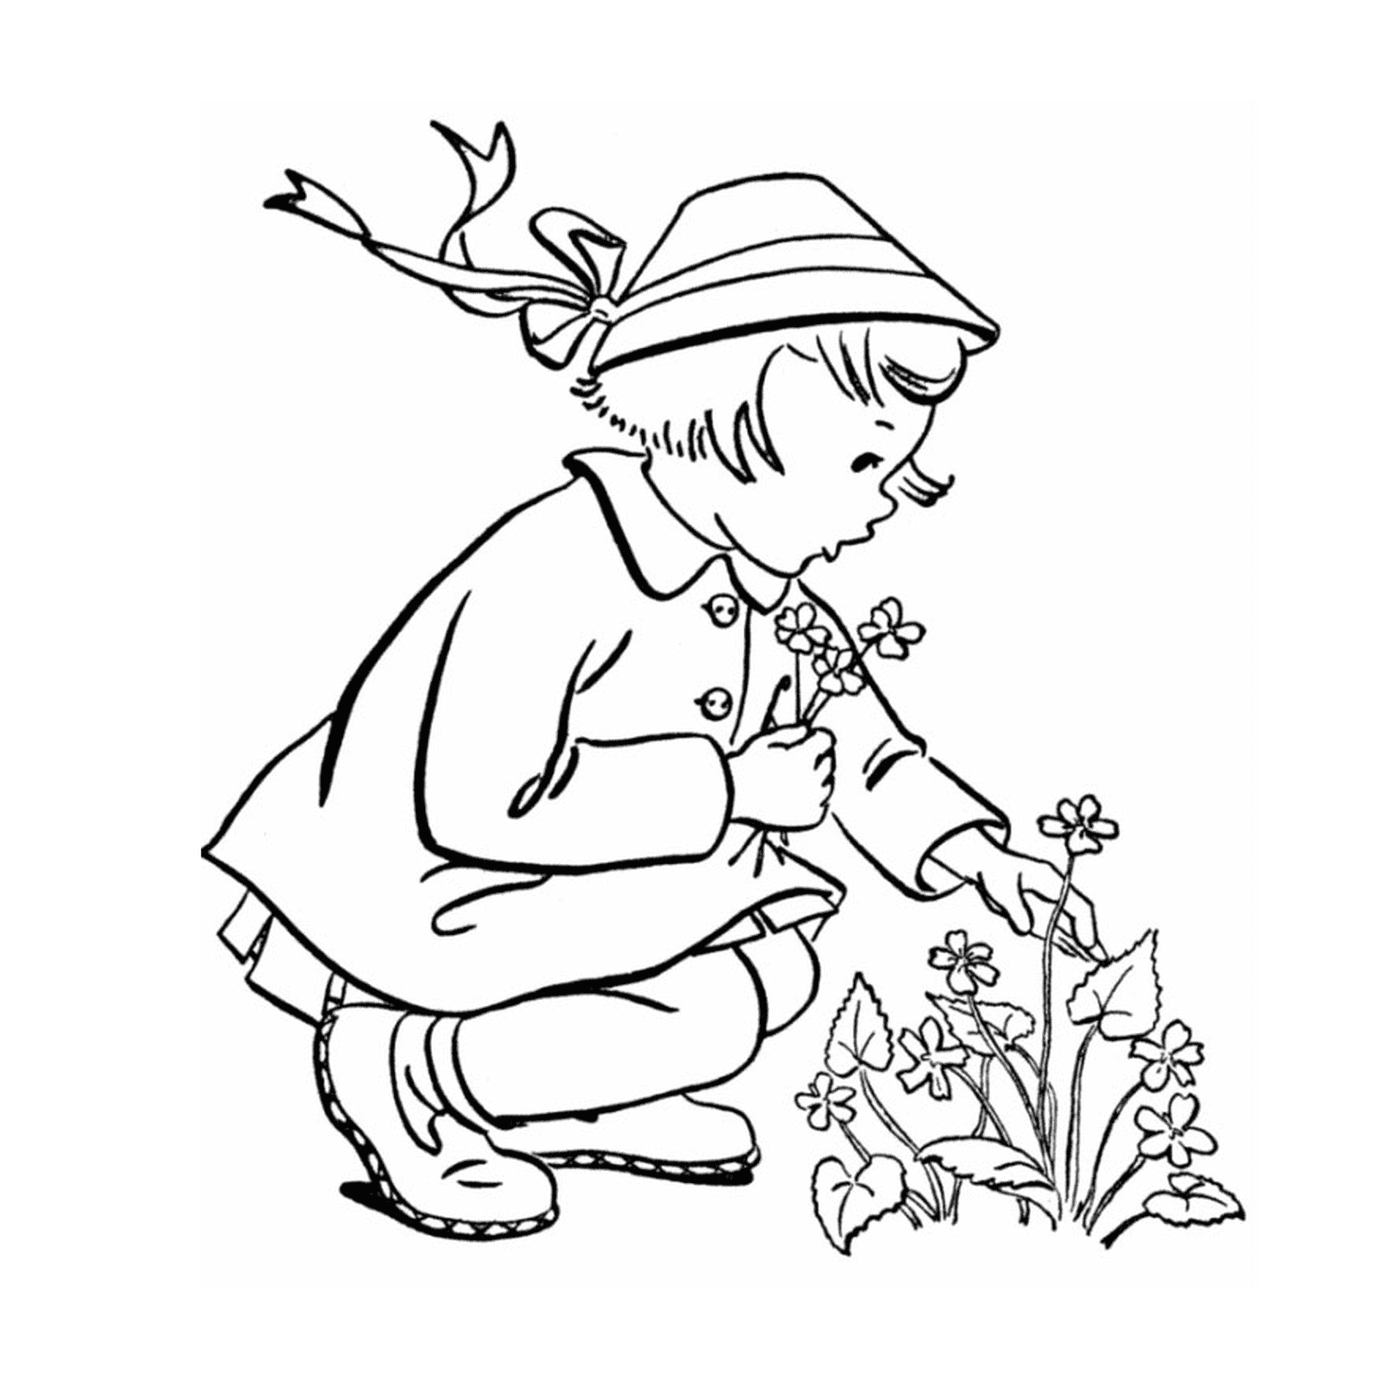   Une petite fille qui s'agenouille pour planter une fleur 